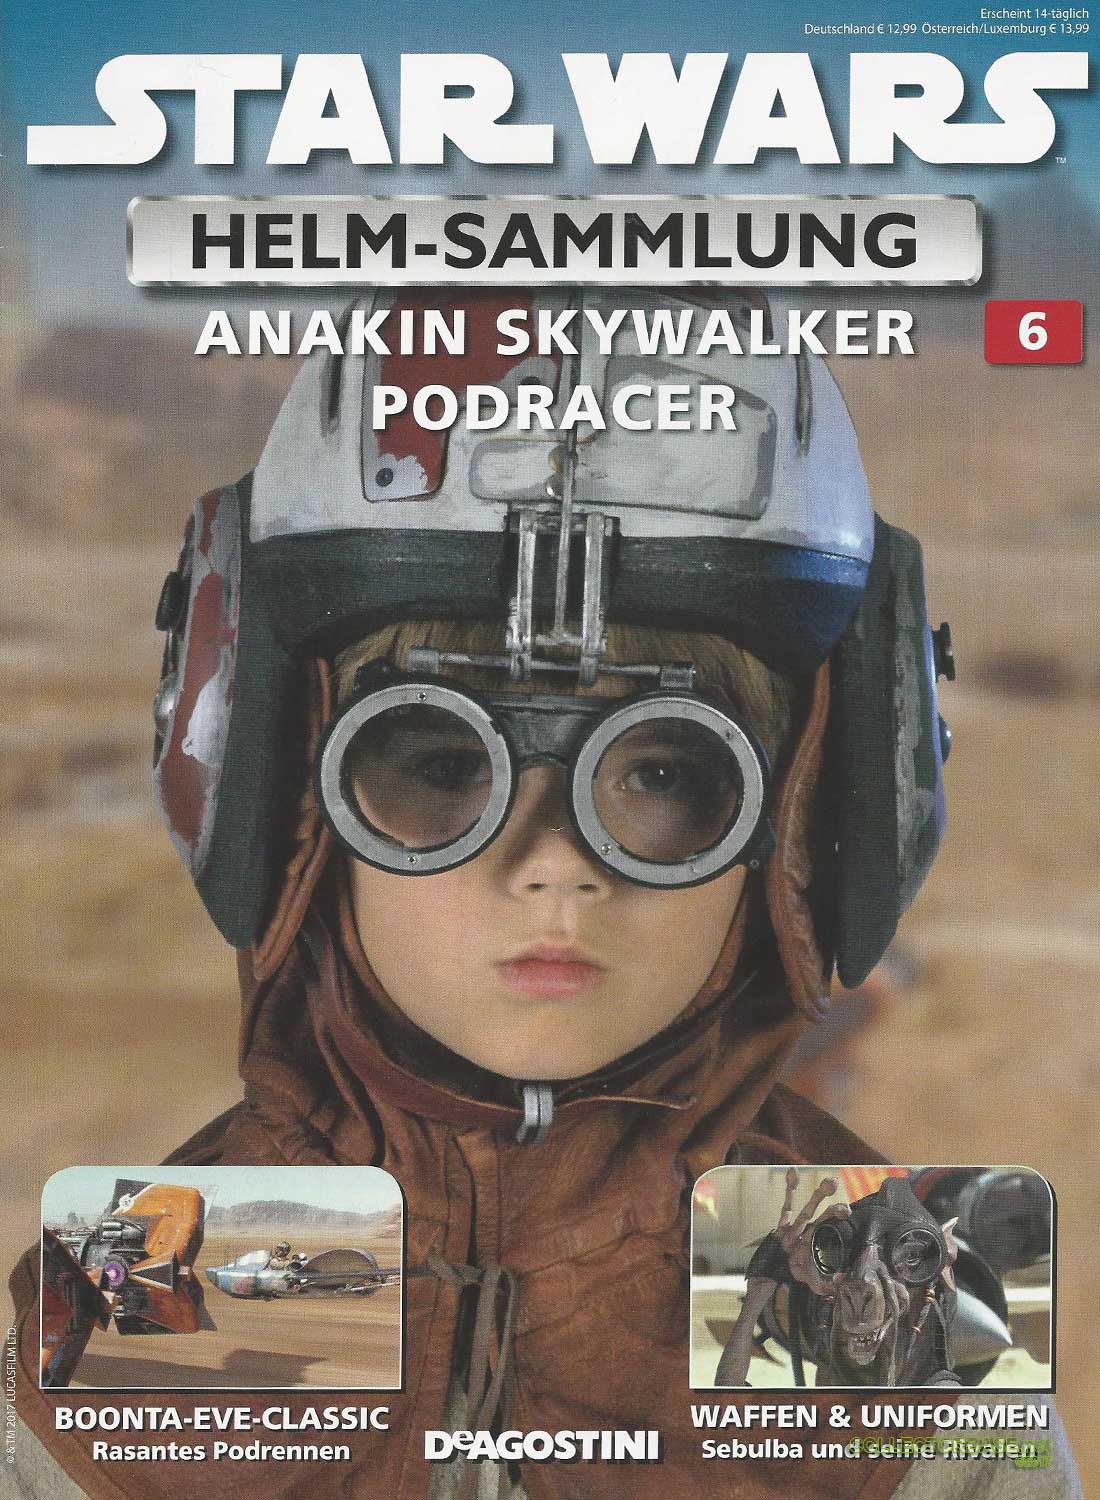 6 Podracer Anakin Skywalker Star Wars Helm  1:5 Sammlung Ausgabe Nr 